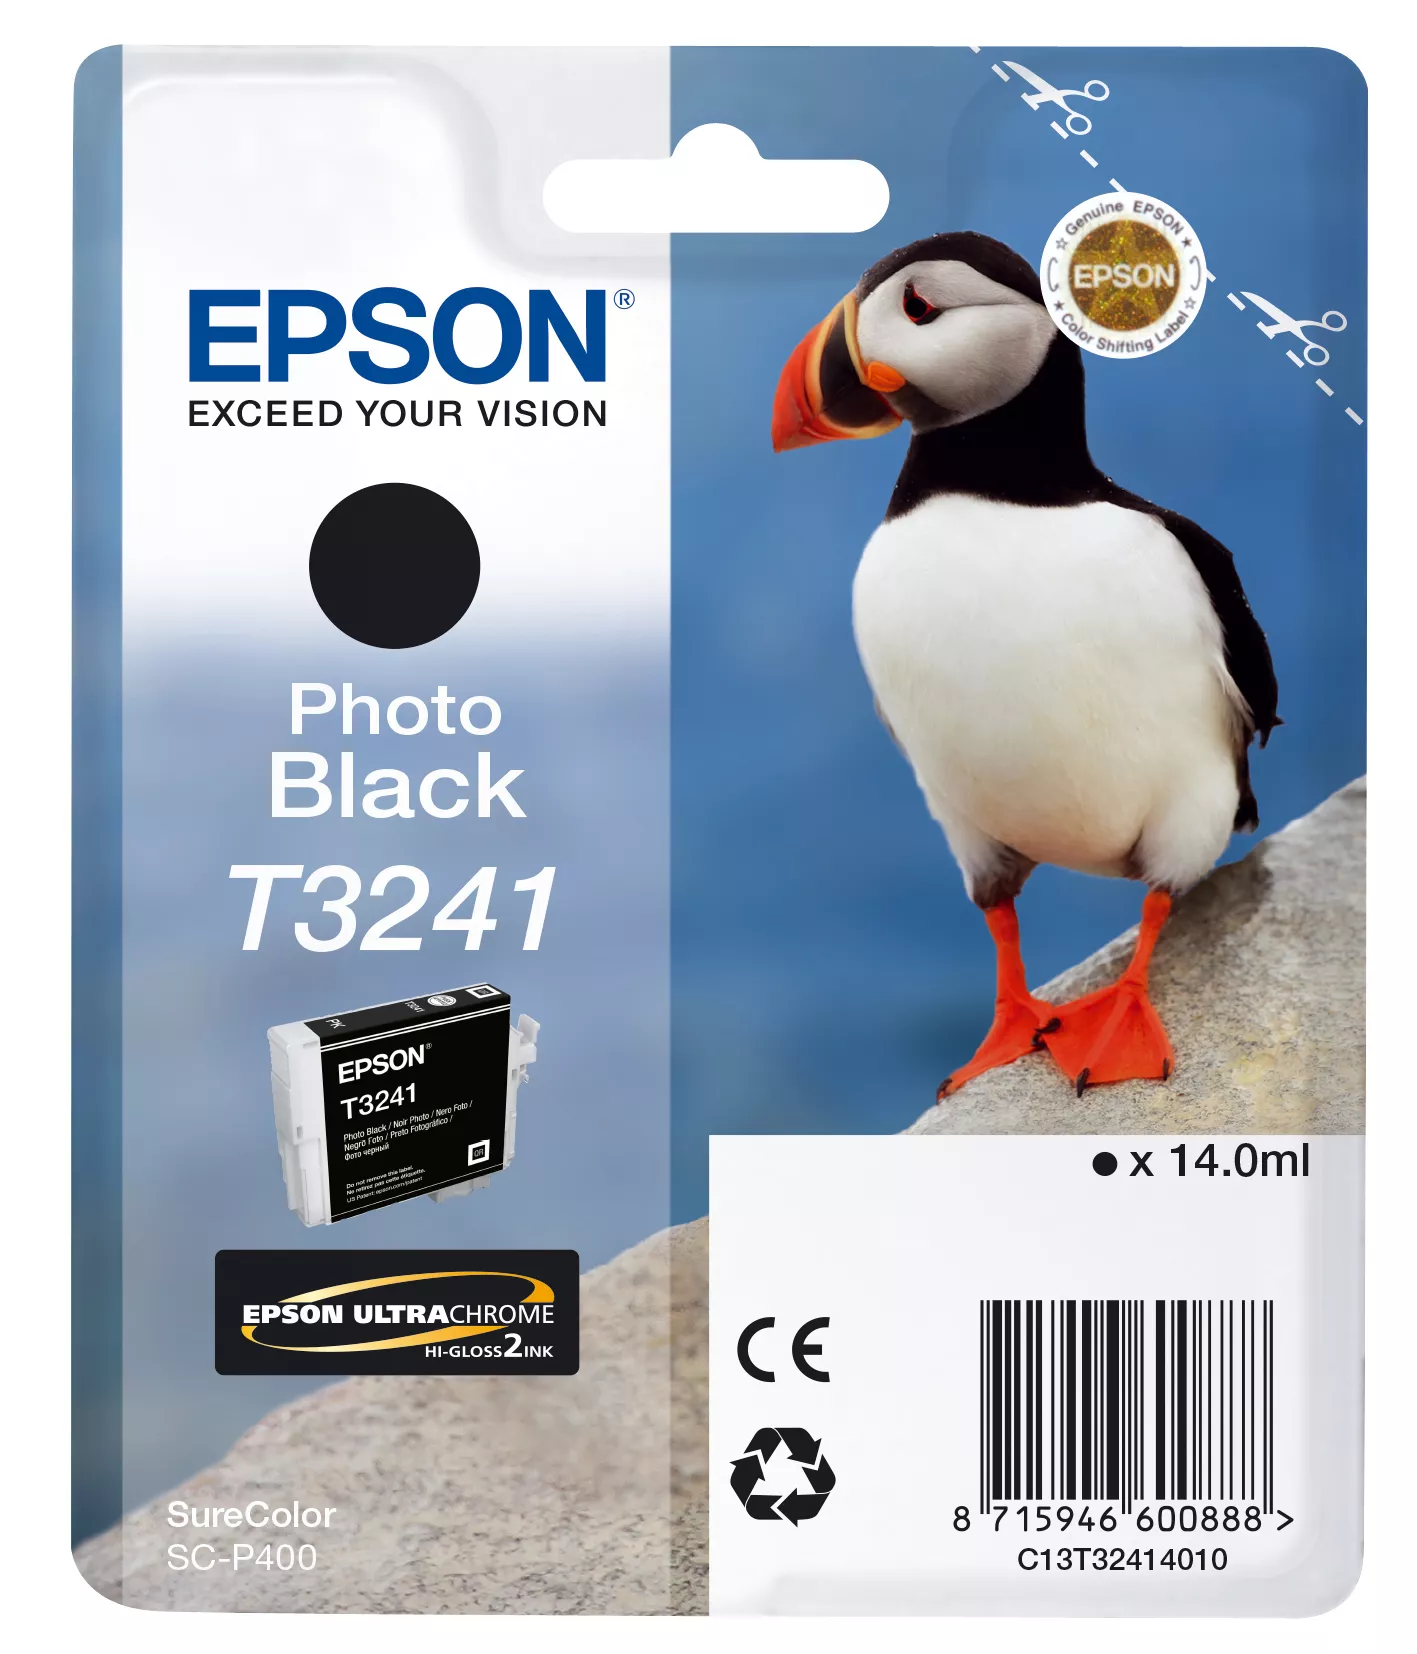 Achat EPSON Cartouche T3241 - Noir Photo 4200 pages au meilleur prix